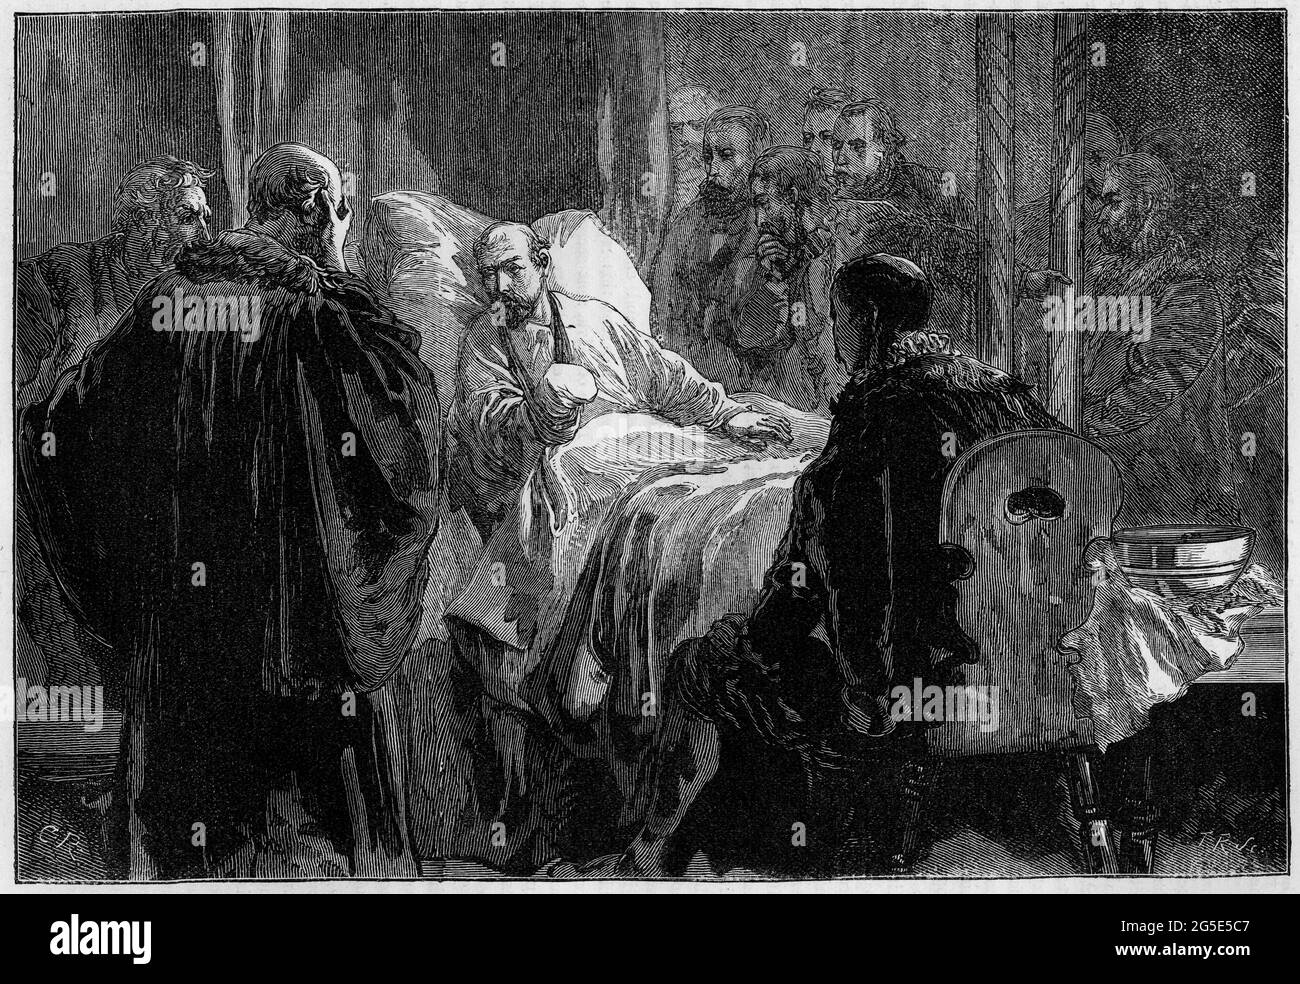 Incisione dell'ammiraglio Coligny circondato dai suoi amici dopo essere stato ferito fatalmente nel massacro del giorno di San Bartolemew, quando i cattolici si sono levati contro i loro vicini Hugeunot in Francia. Foto Stock